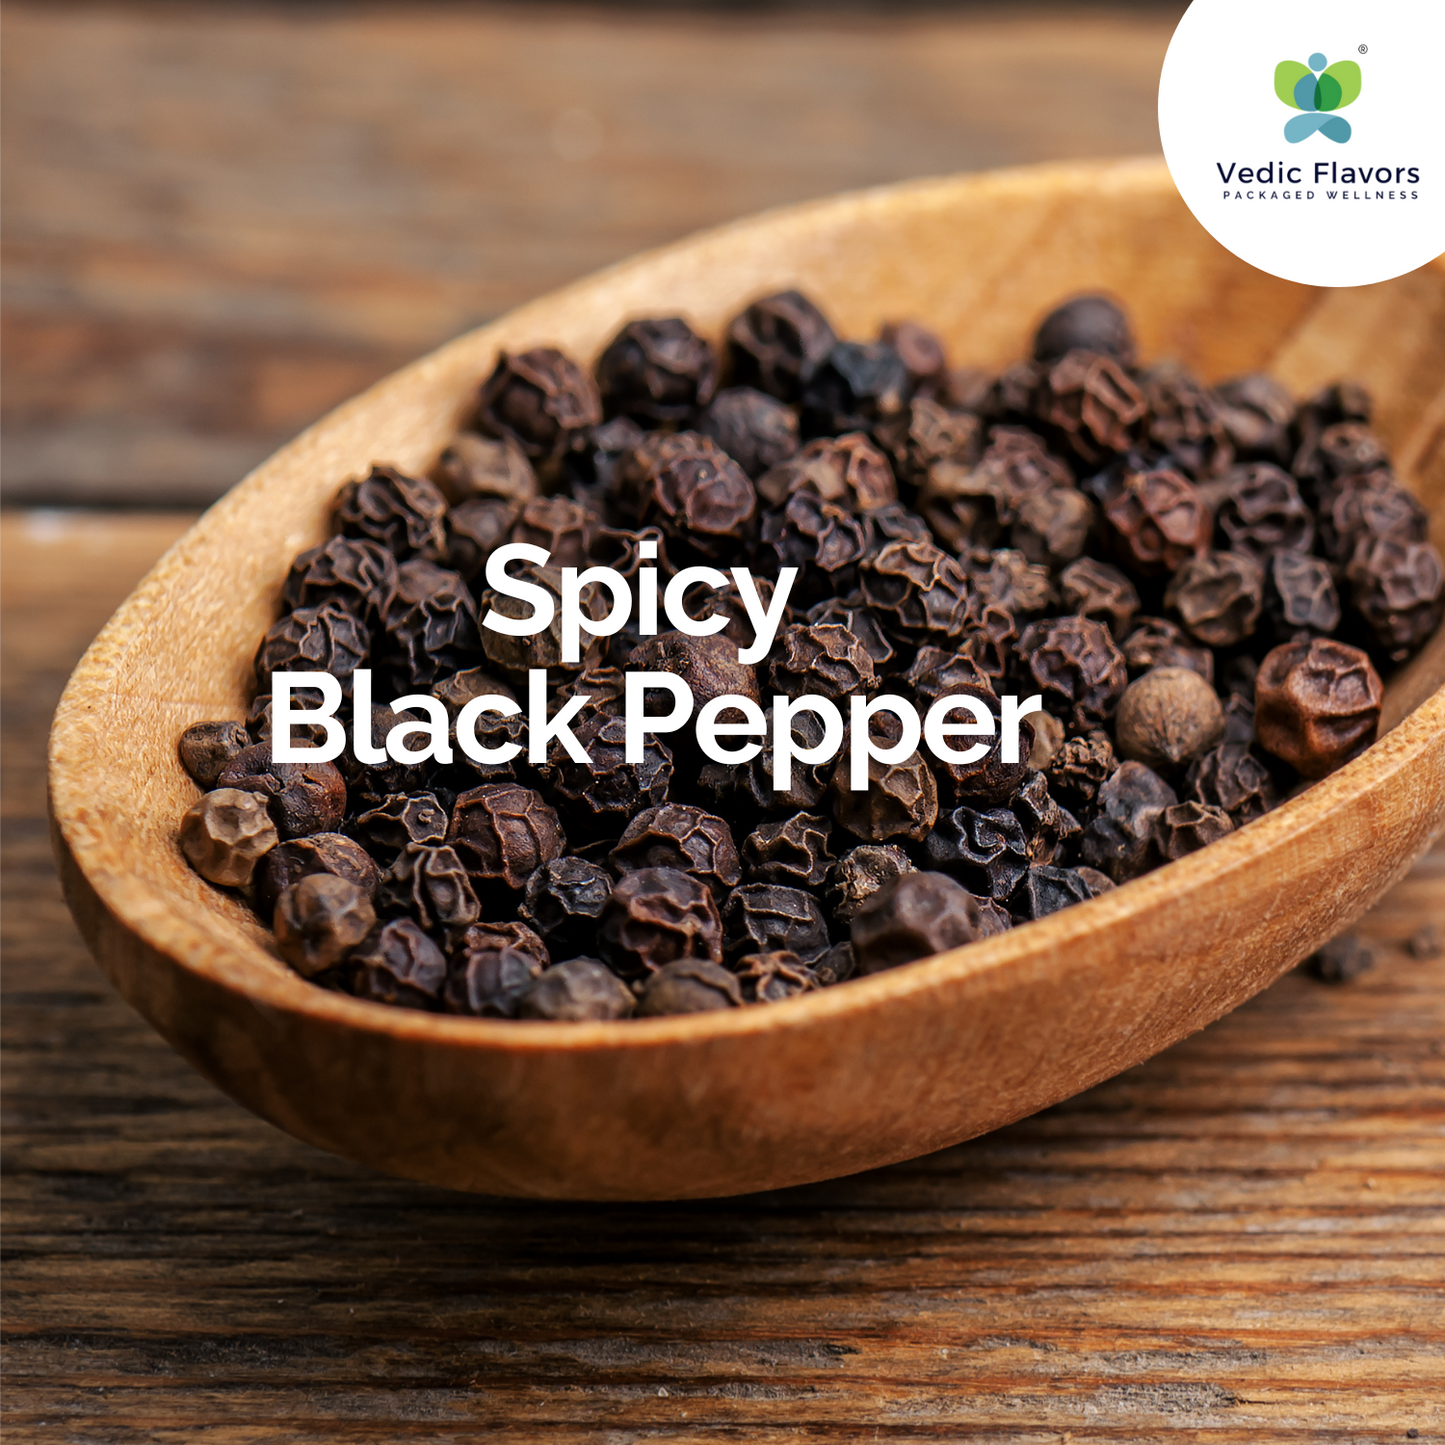 Black Pepper (Kali Mirch)